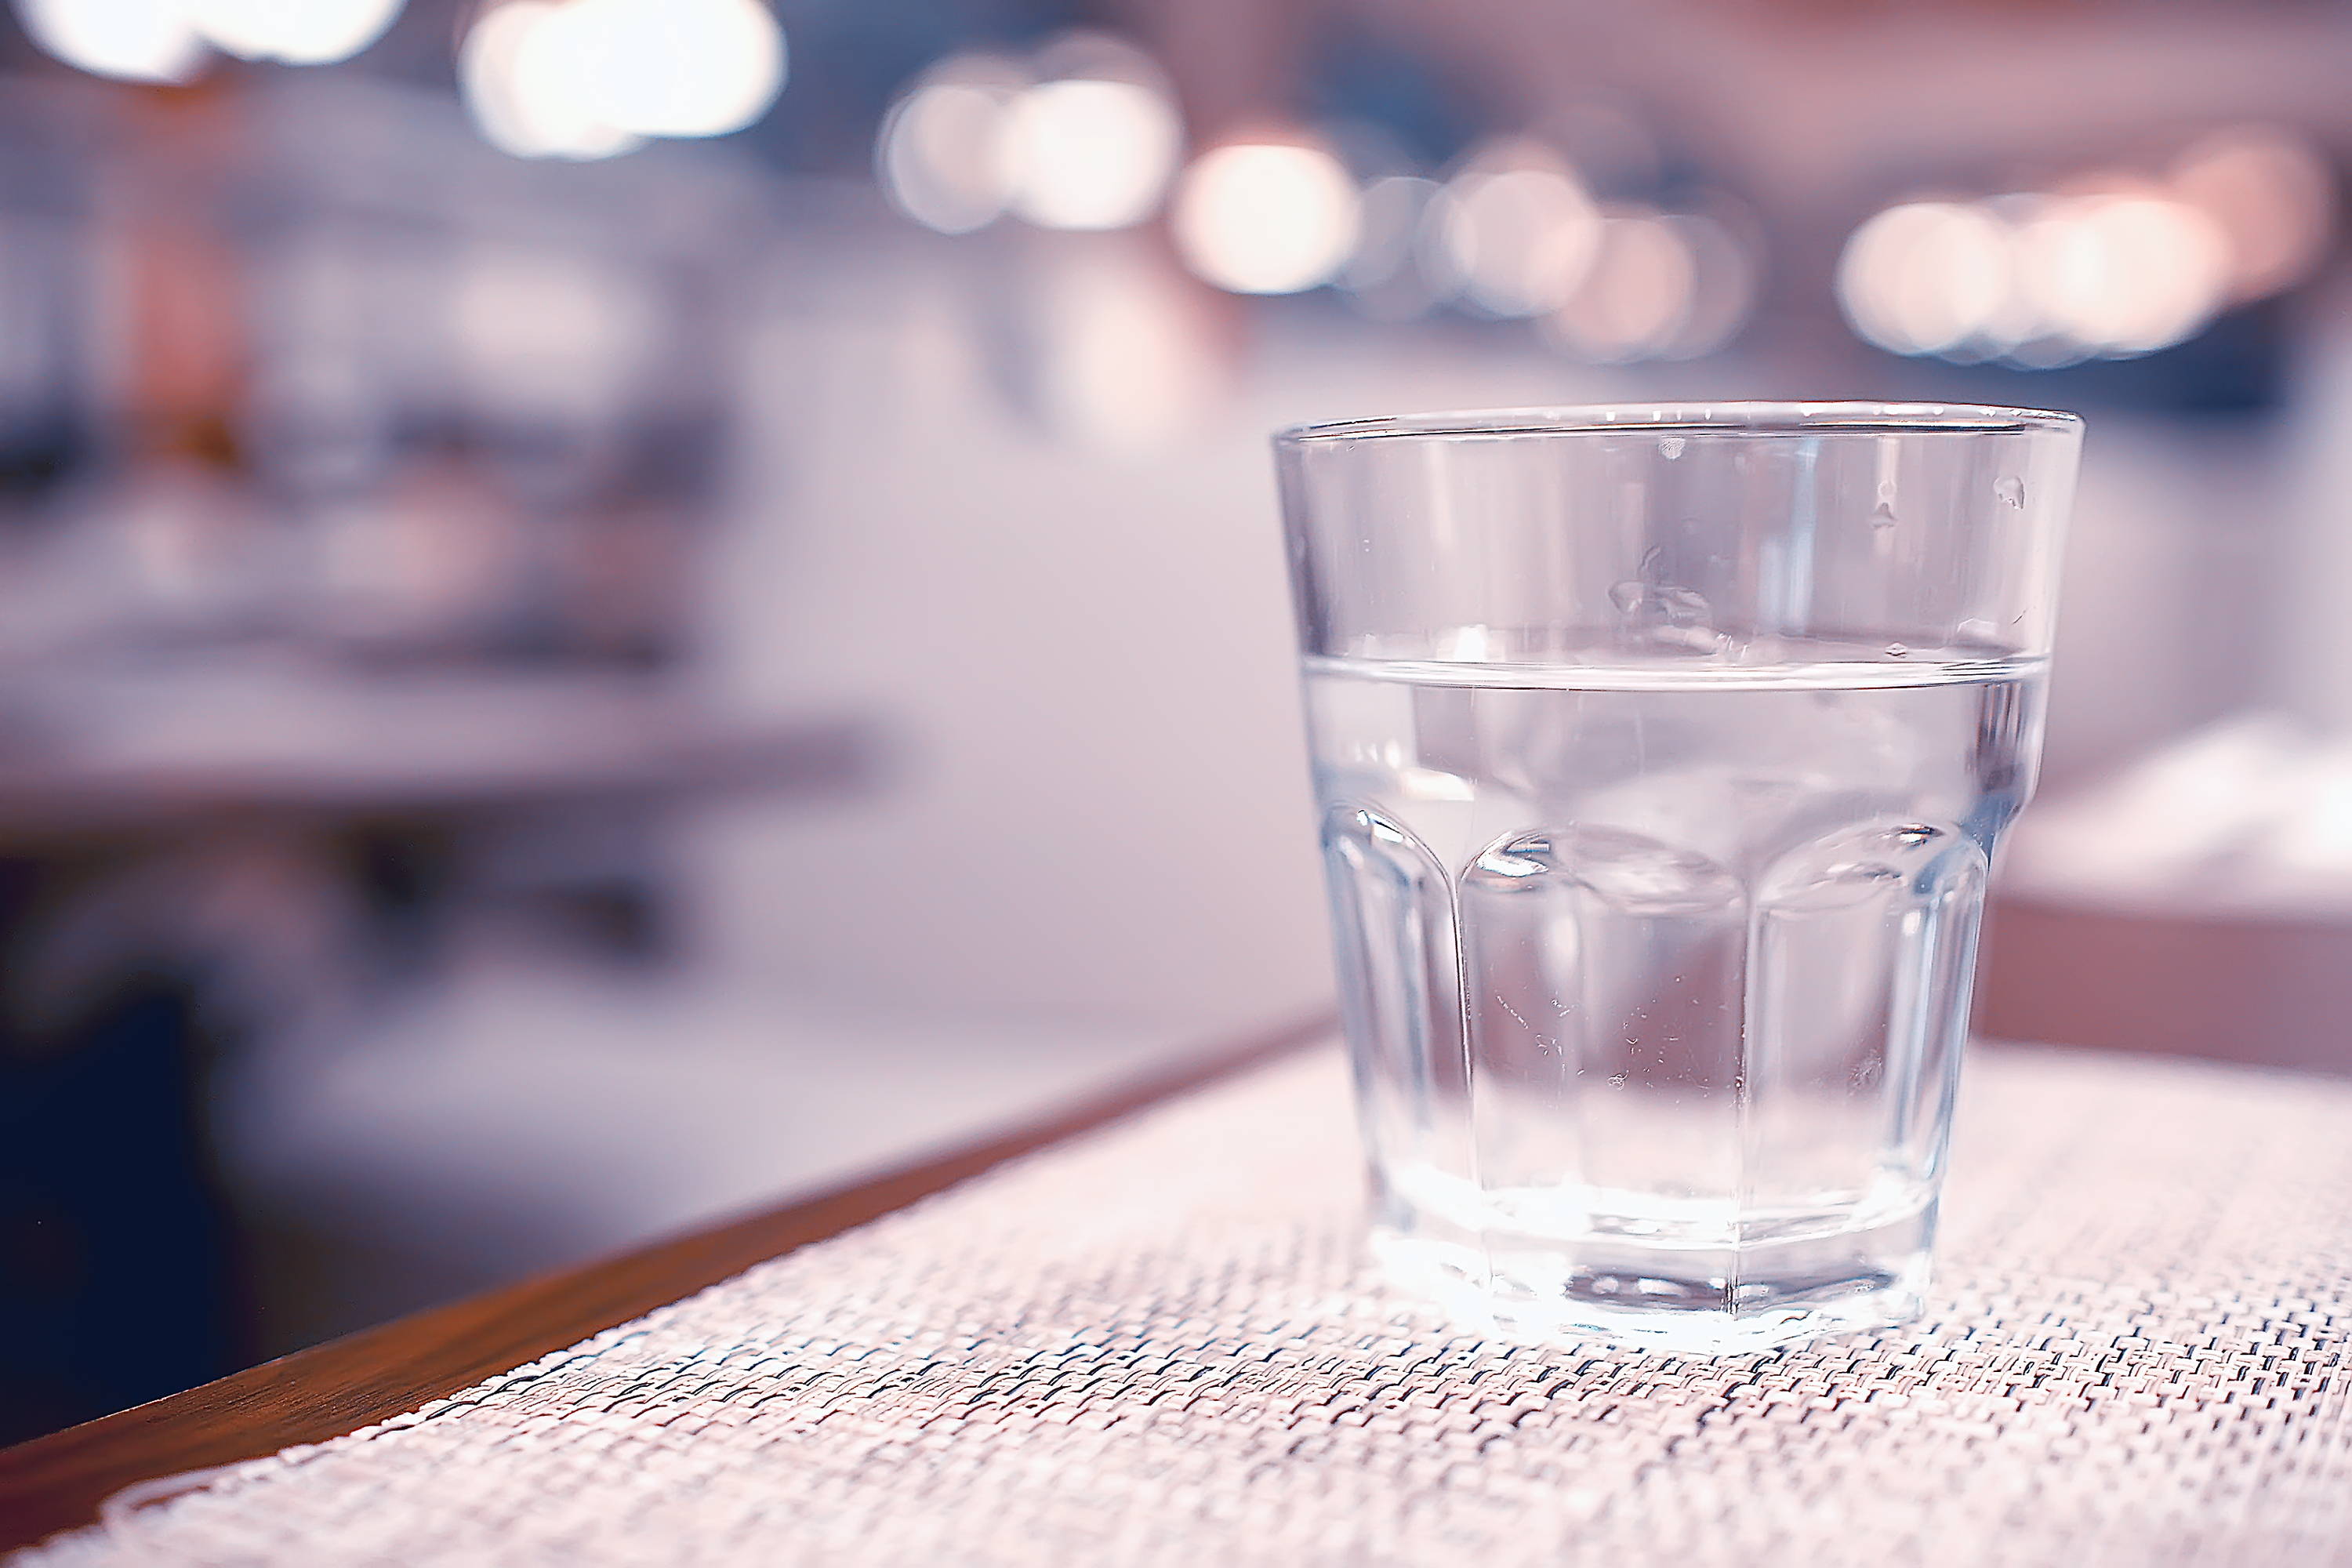 Η θεραπεία με υπεριώδη ακτινοβολία βοηθά τα εστιατόρια να σερβίρουν ασφαλές νερό